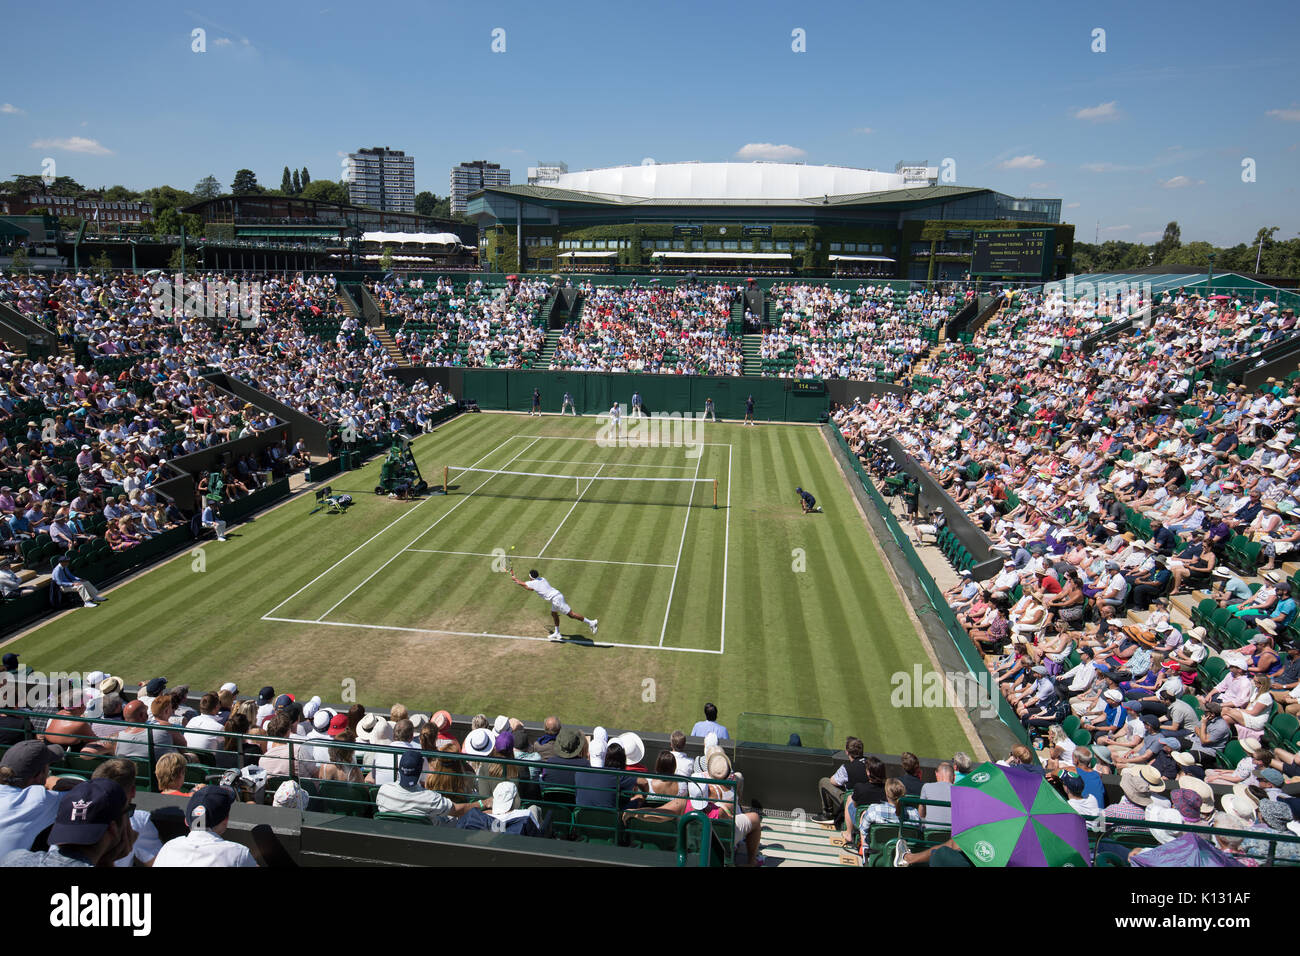 Allgemeine Ansicht des Gerichtshofes 2 mit Simone BOLELLI und Jo-Wilfred Tsonga in Aktion bei den Herren Singles - Wimbledon Championships 2017 Stockfoto